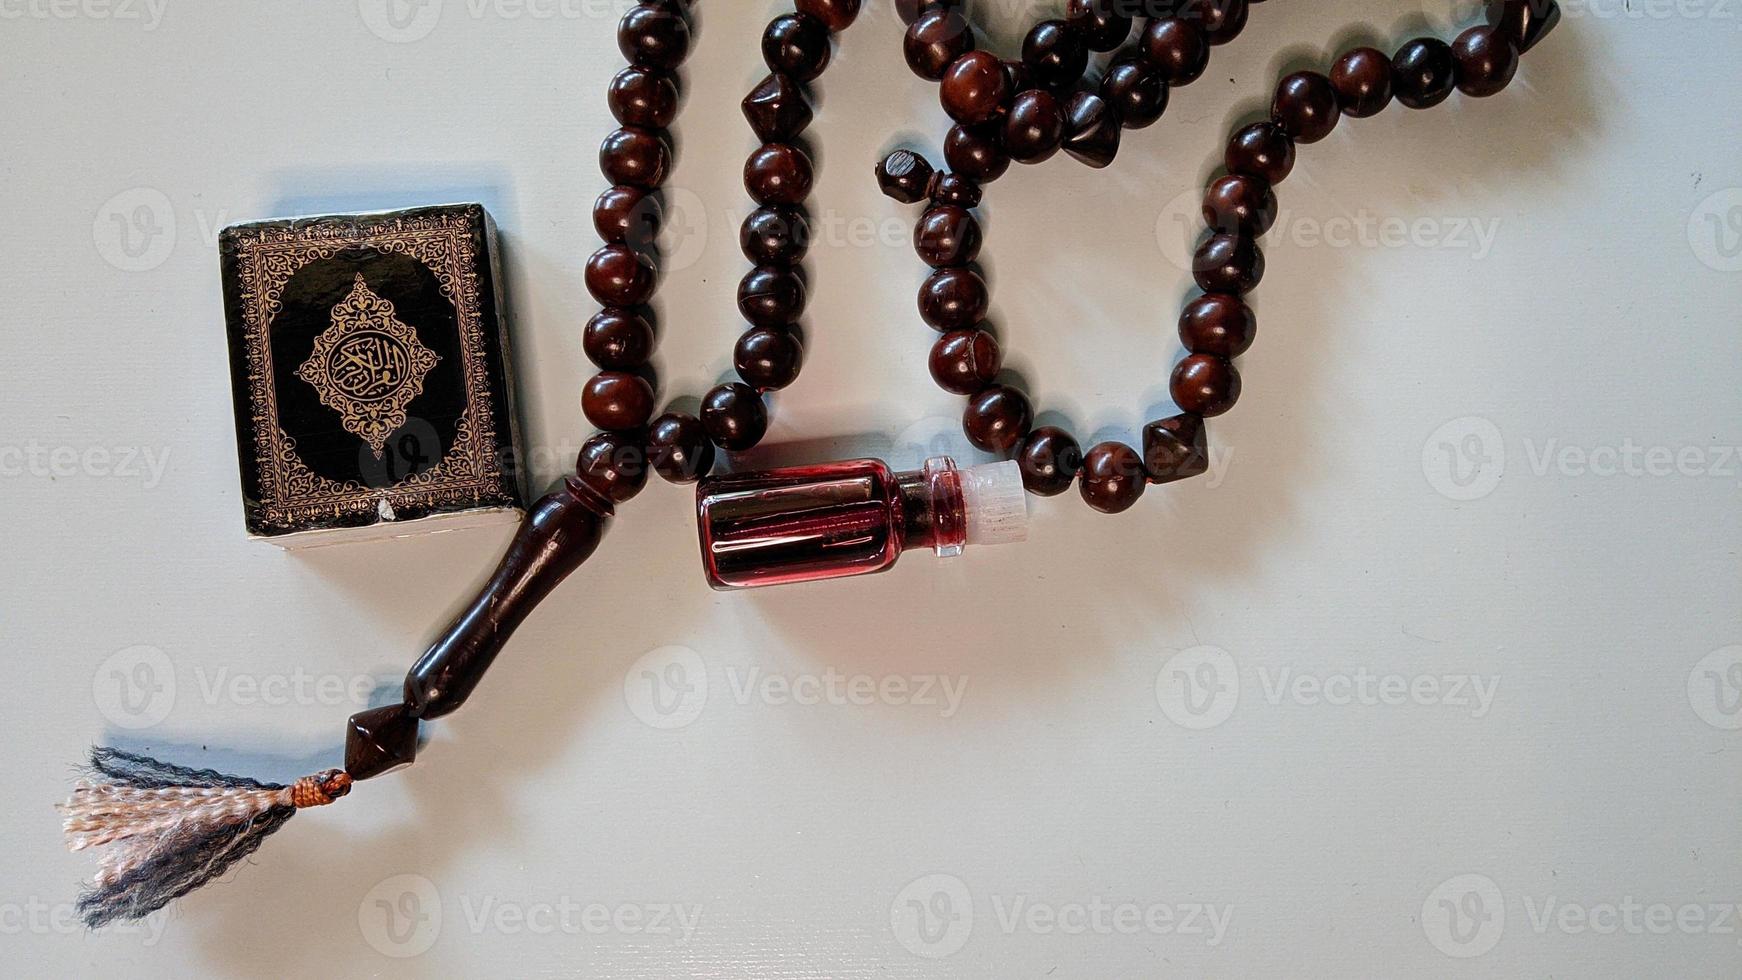 islamitische achtergrond van gebeds- en aanbiddingsapparatuur. de tekst op de foto is in het Arabisch, wat de koran betekent.